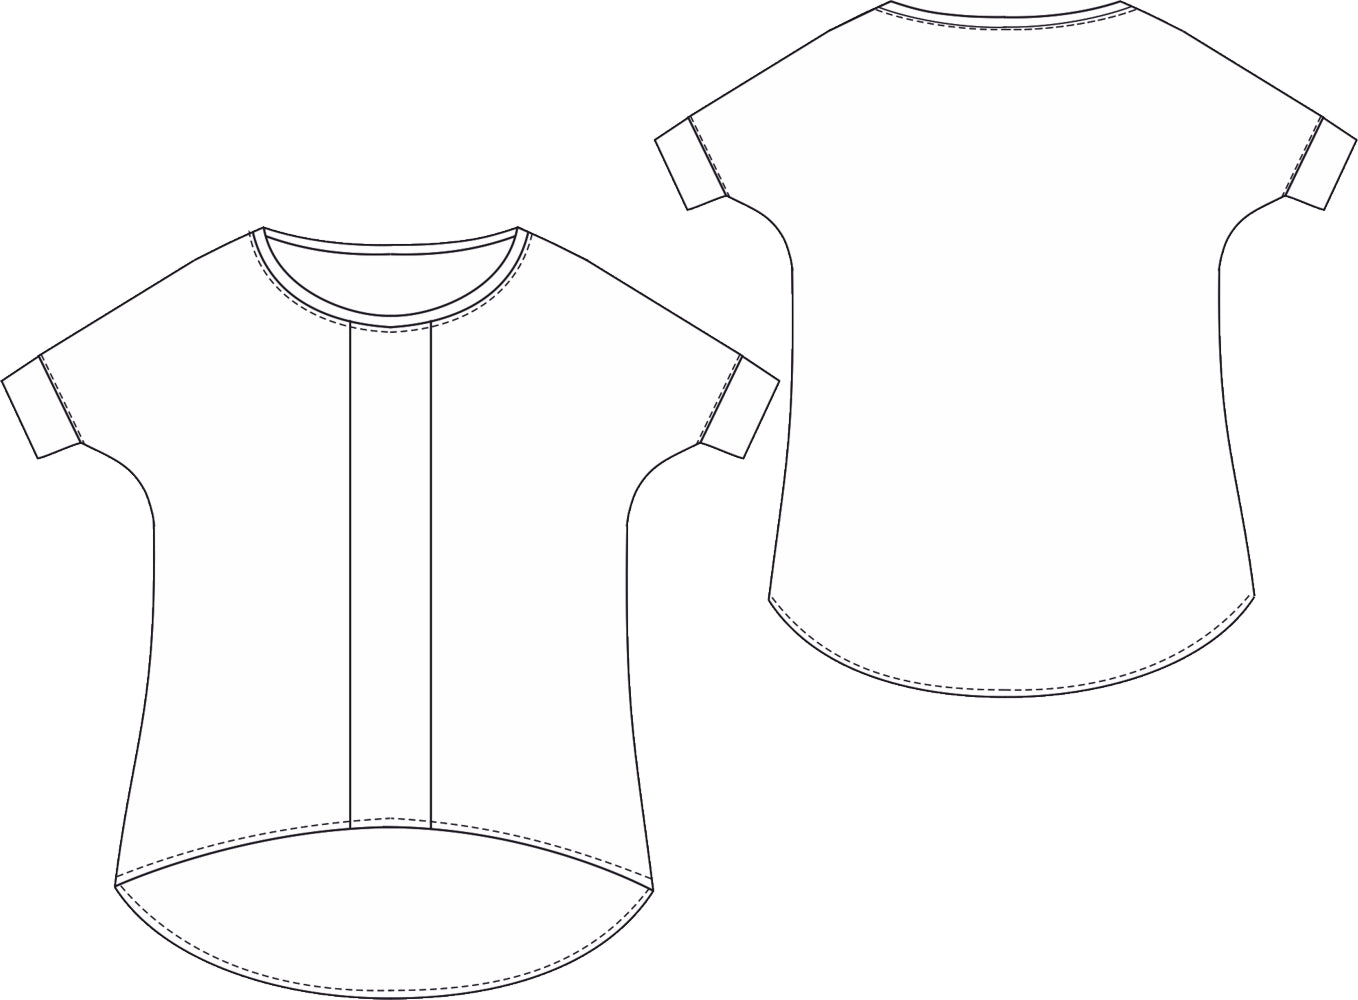 Technische Zeichnung eines T-Shirts zum selber nähen